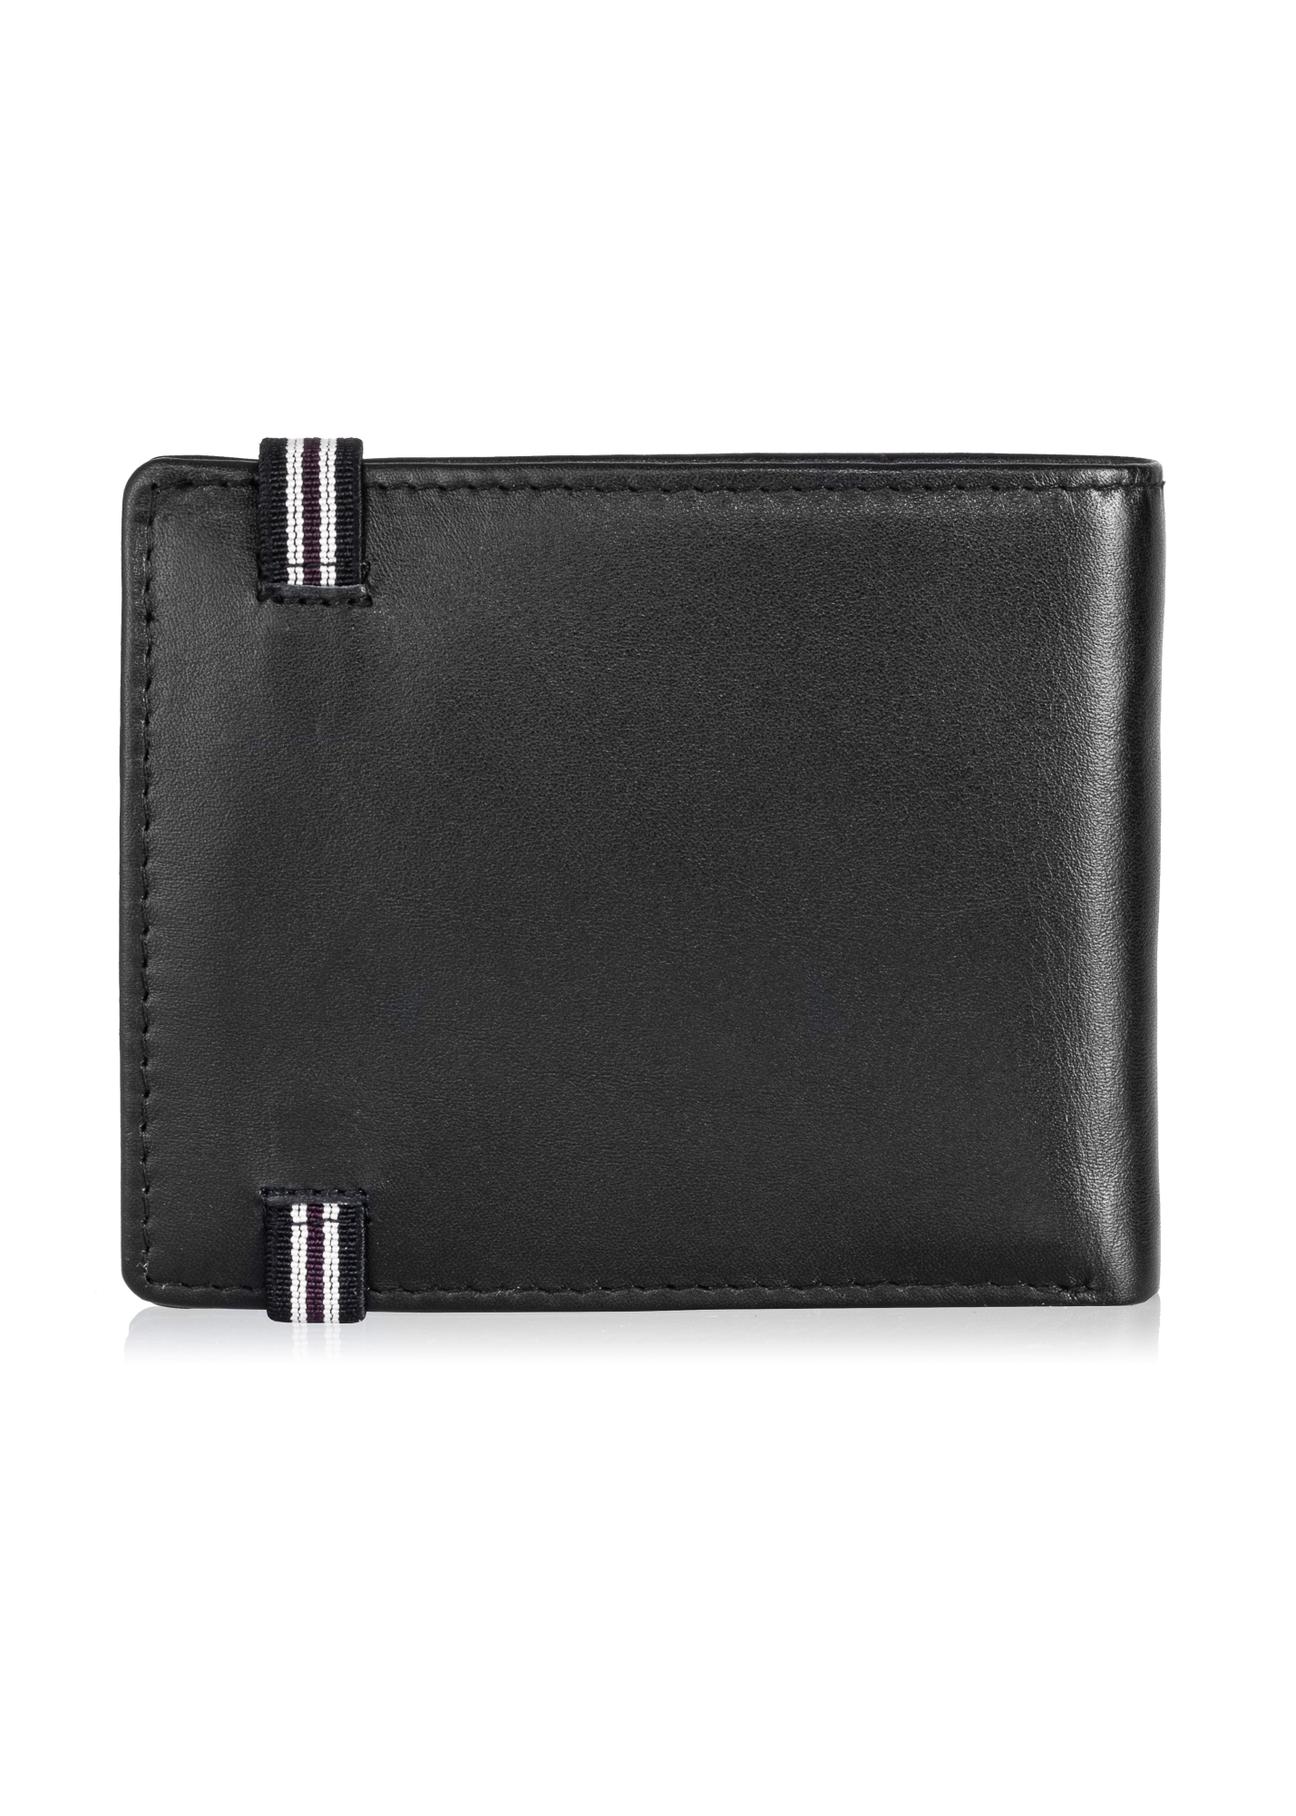 Skórzany portfel męski na gumkę PORMS-0517-99(W24)